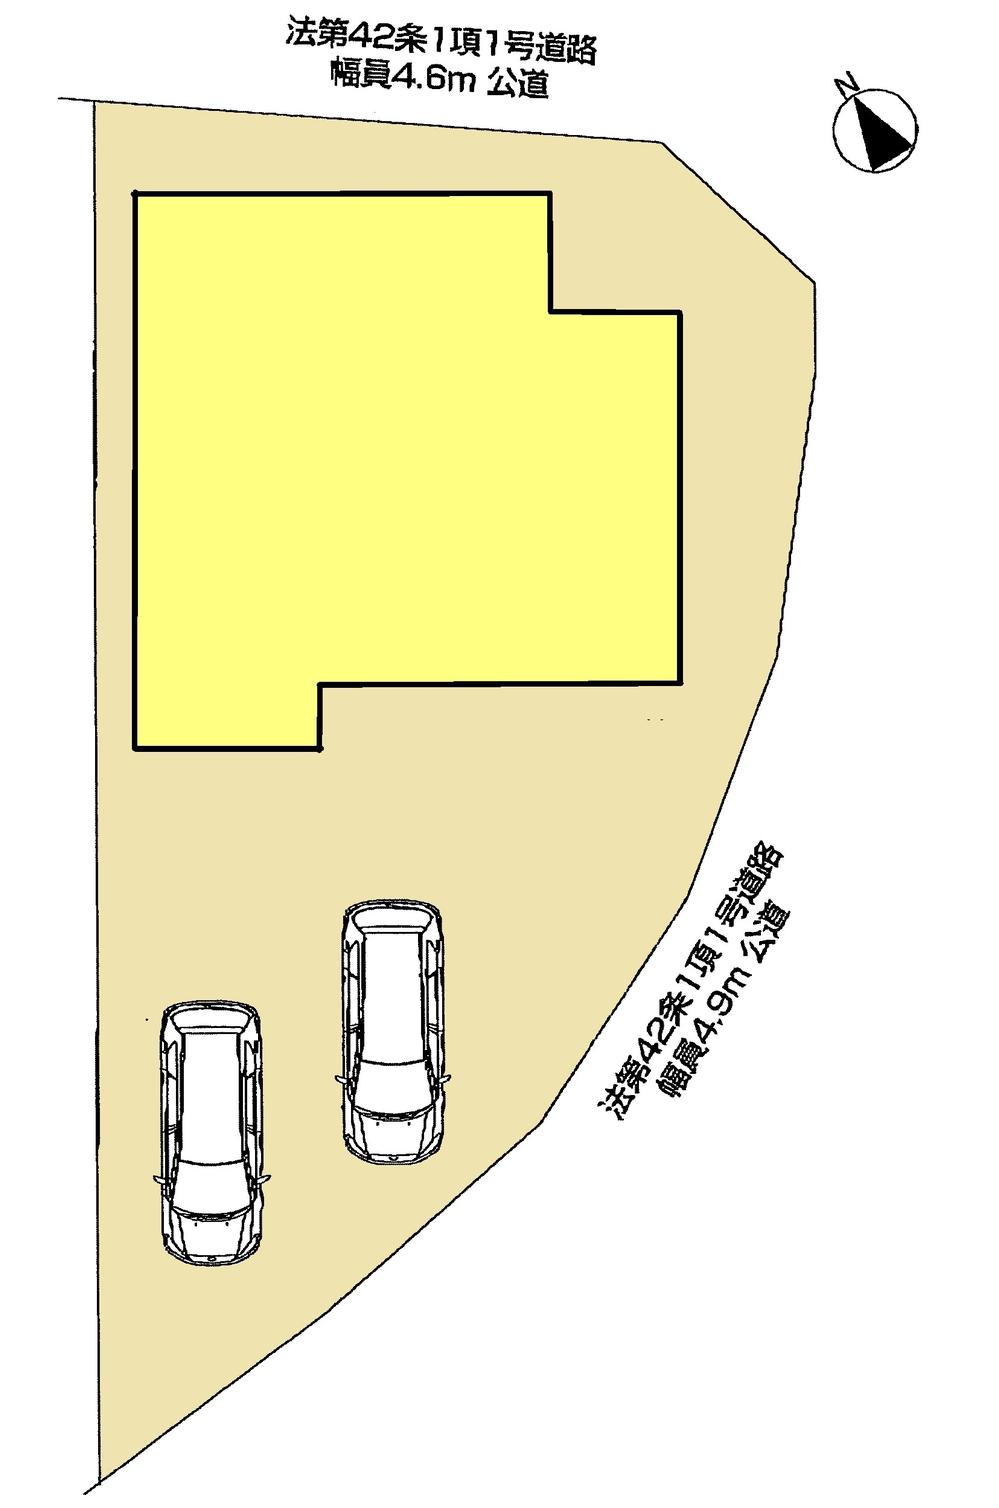 Compartment figure. 32,800,000 yen, 4LDK, Land area 154.28 sq m , Building area 98.42 sq m compartment view Parallel parking two possible! 